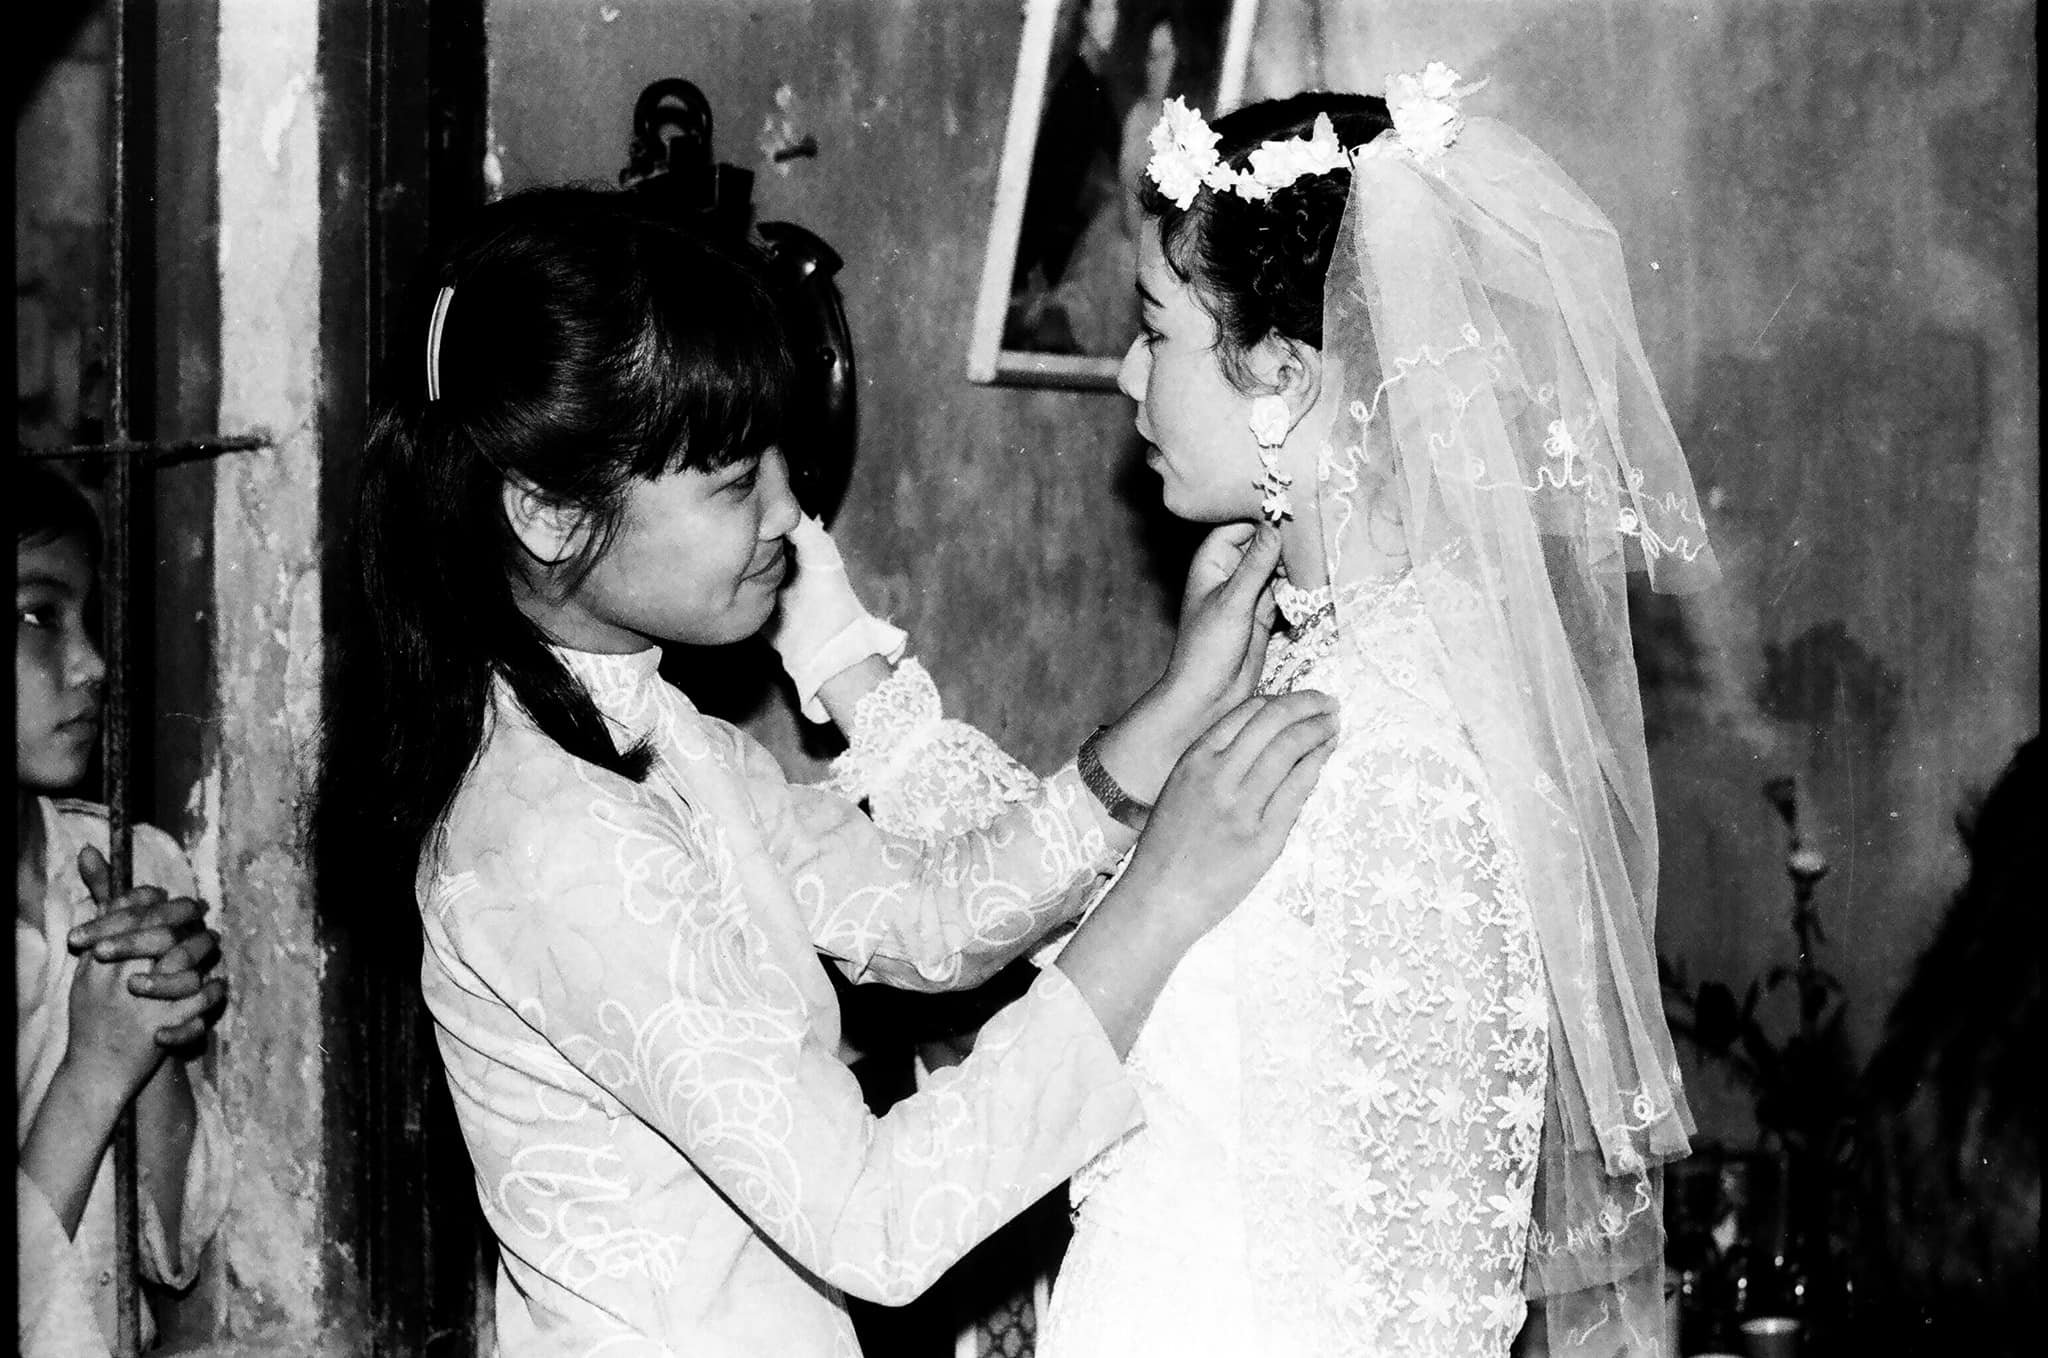 chieu xuan nguoiduatin 7 - 200 năm áo cưới Việt Nam: Từ Nhật Bình đến chiếc sơmi thời bom đạn và váy cưới Tây phương